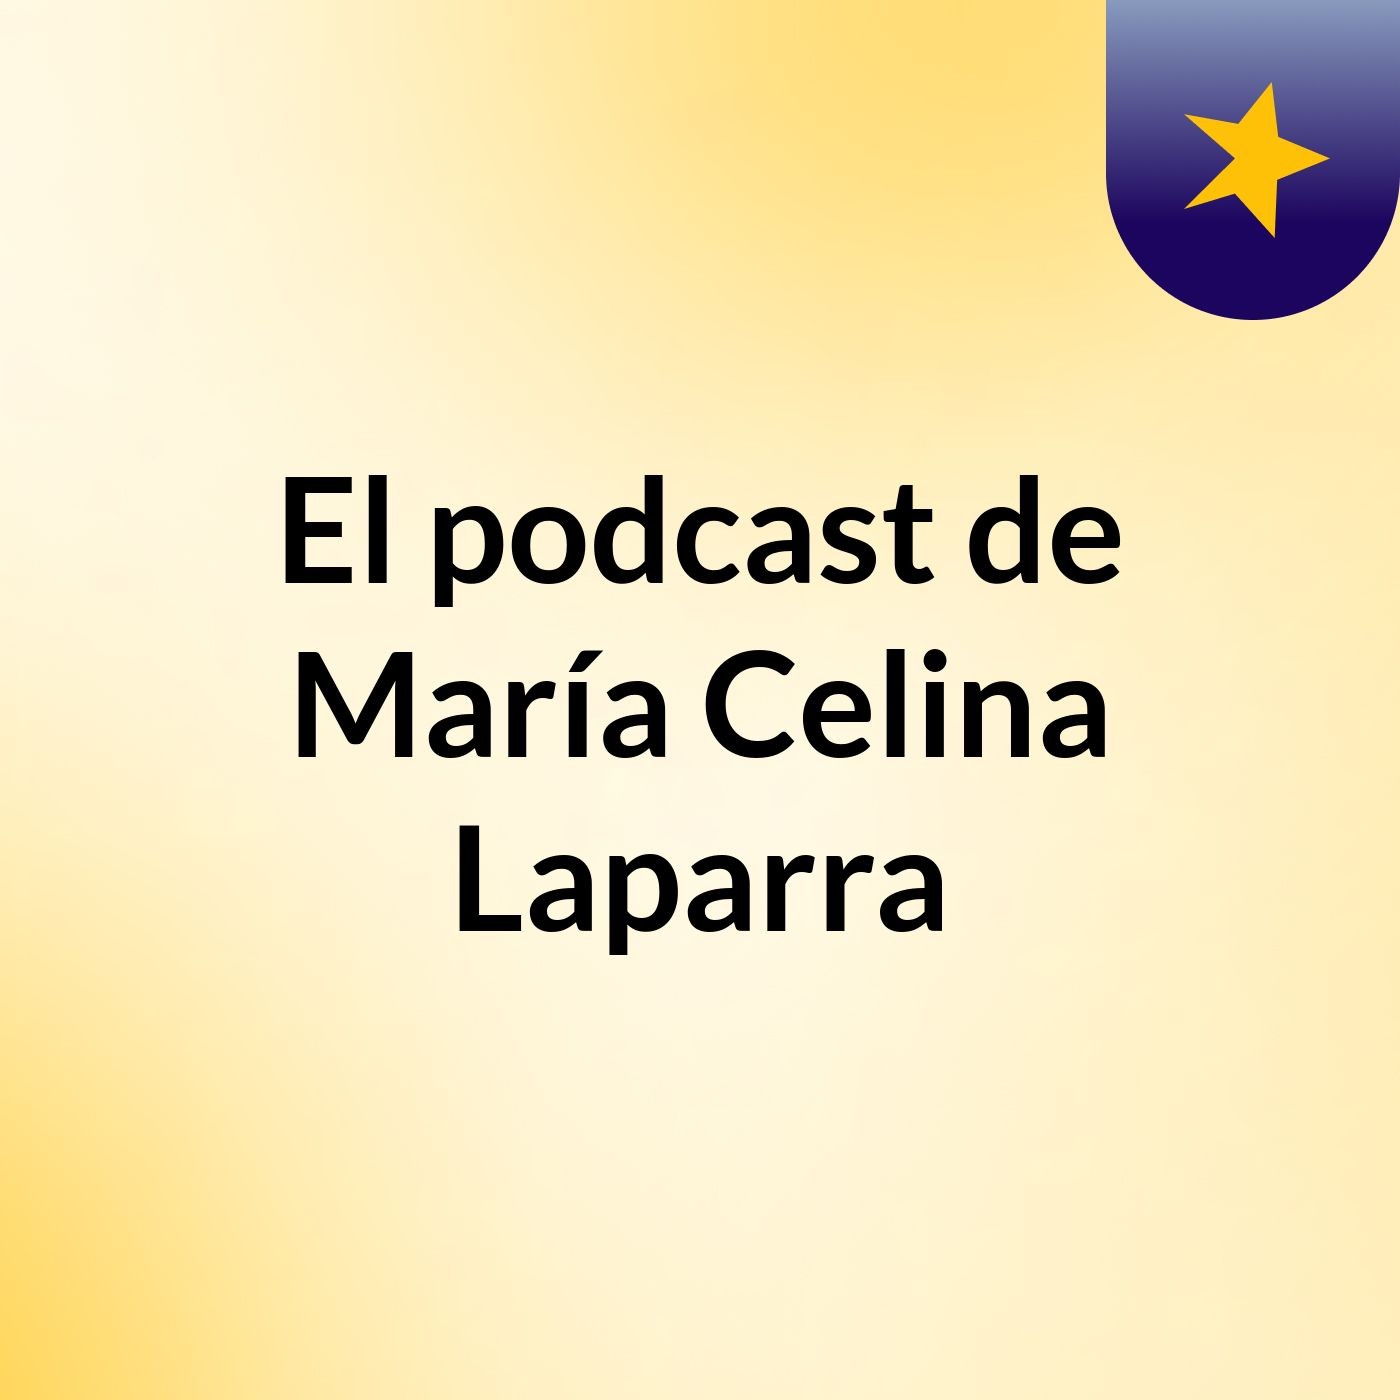 El podcast de María Celina Laparra